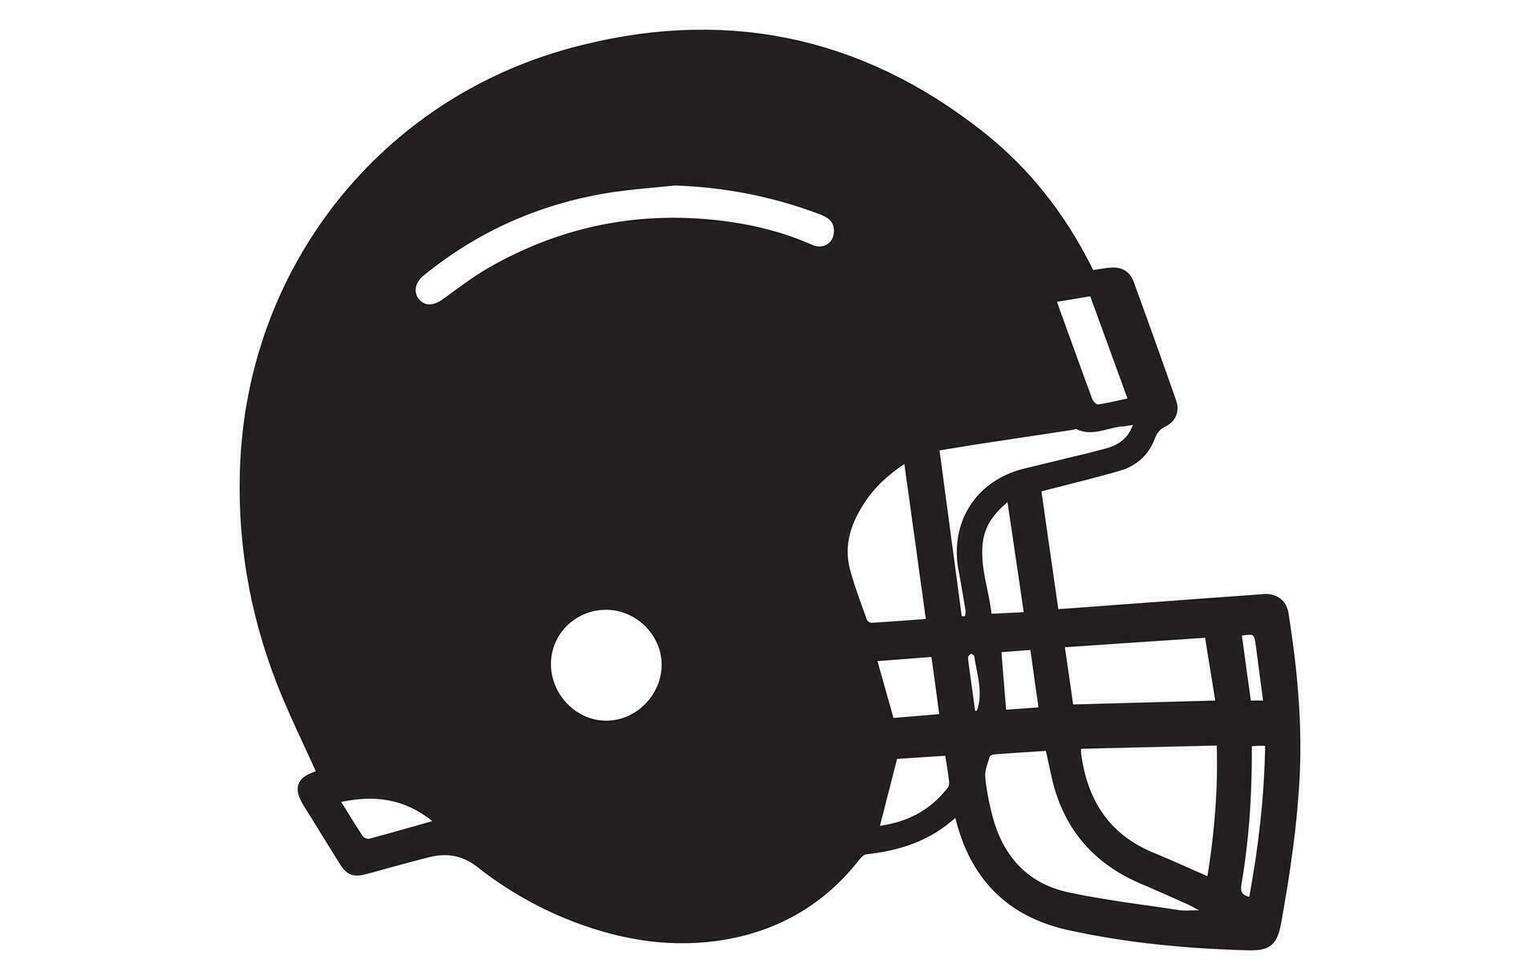 linje teckning illustration av ett amerikan fotboll hjälm, svart och vit fotboll hjälm linje teckning, fotboll hjälm sport ikon symboler. vektor